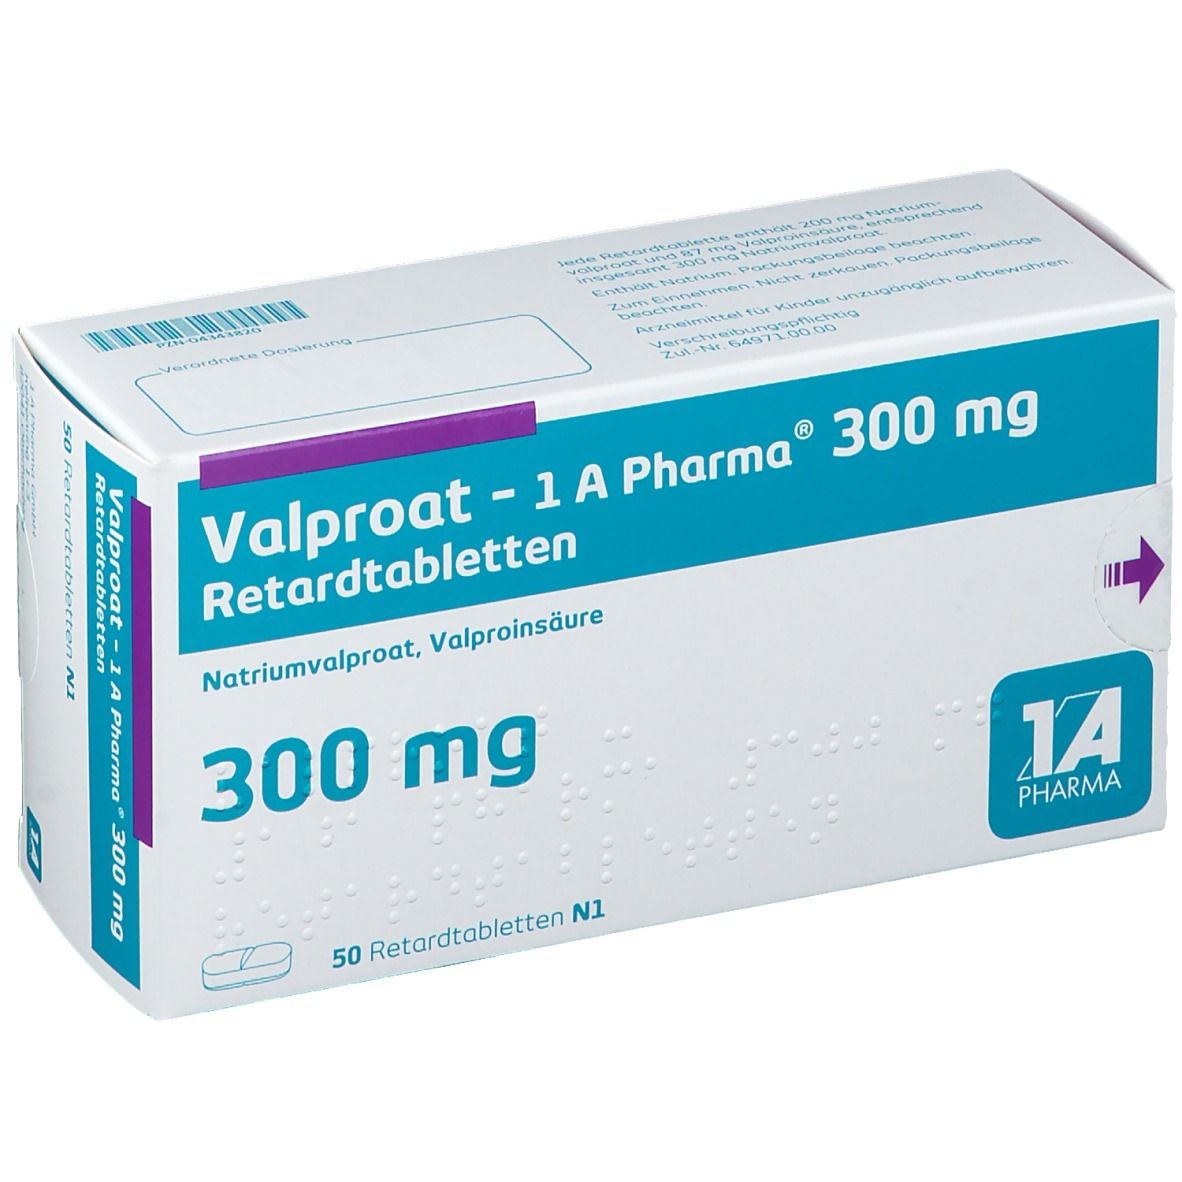 Valproat - 1 A Pharma® 300 mg